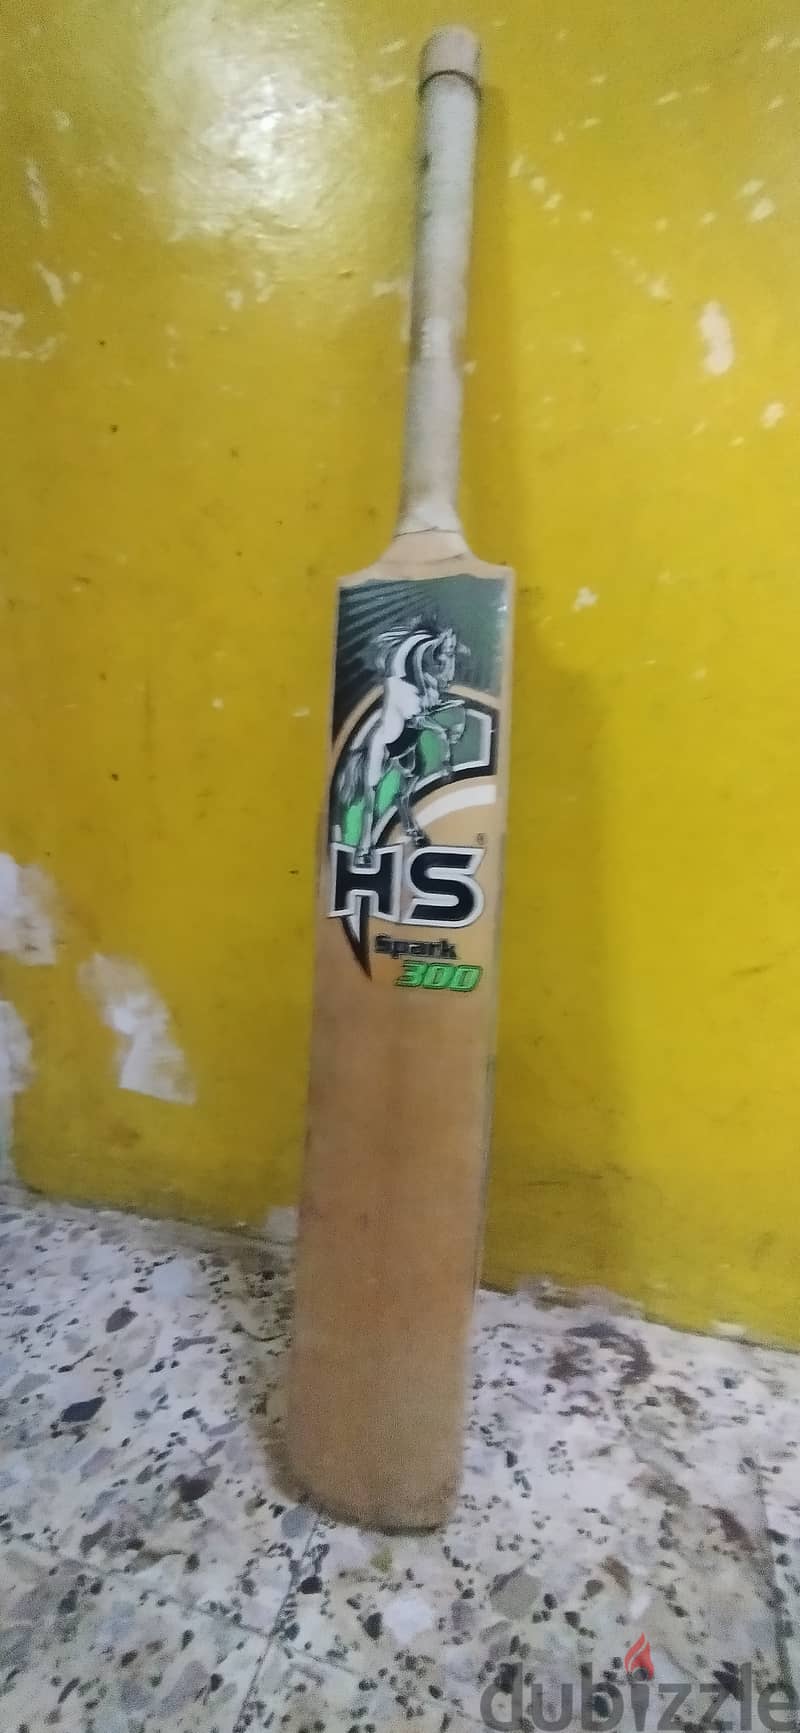 Cricket bat (HS) 1